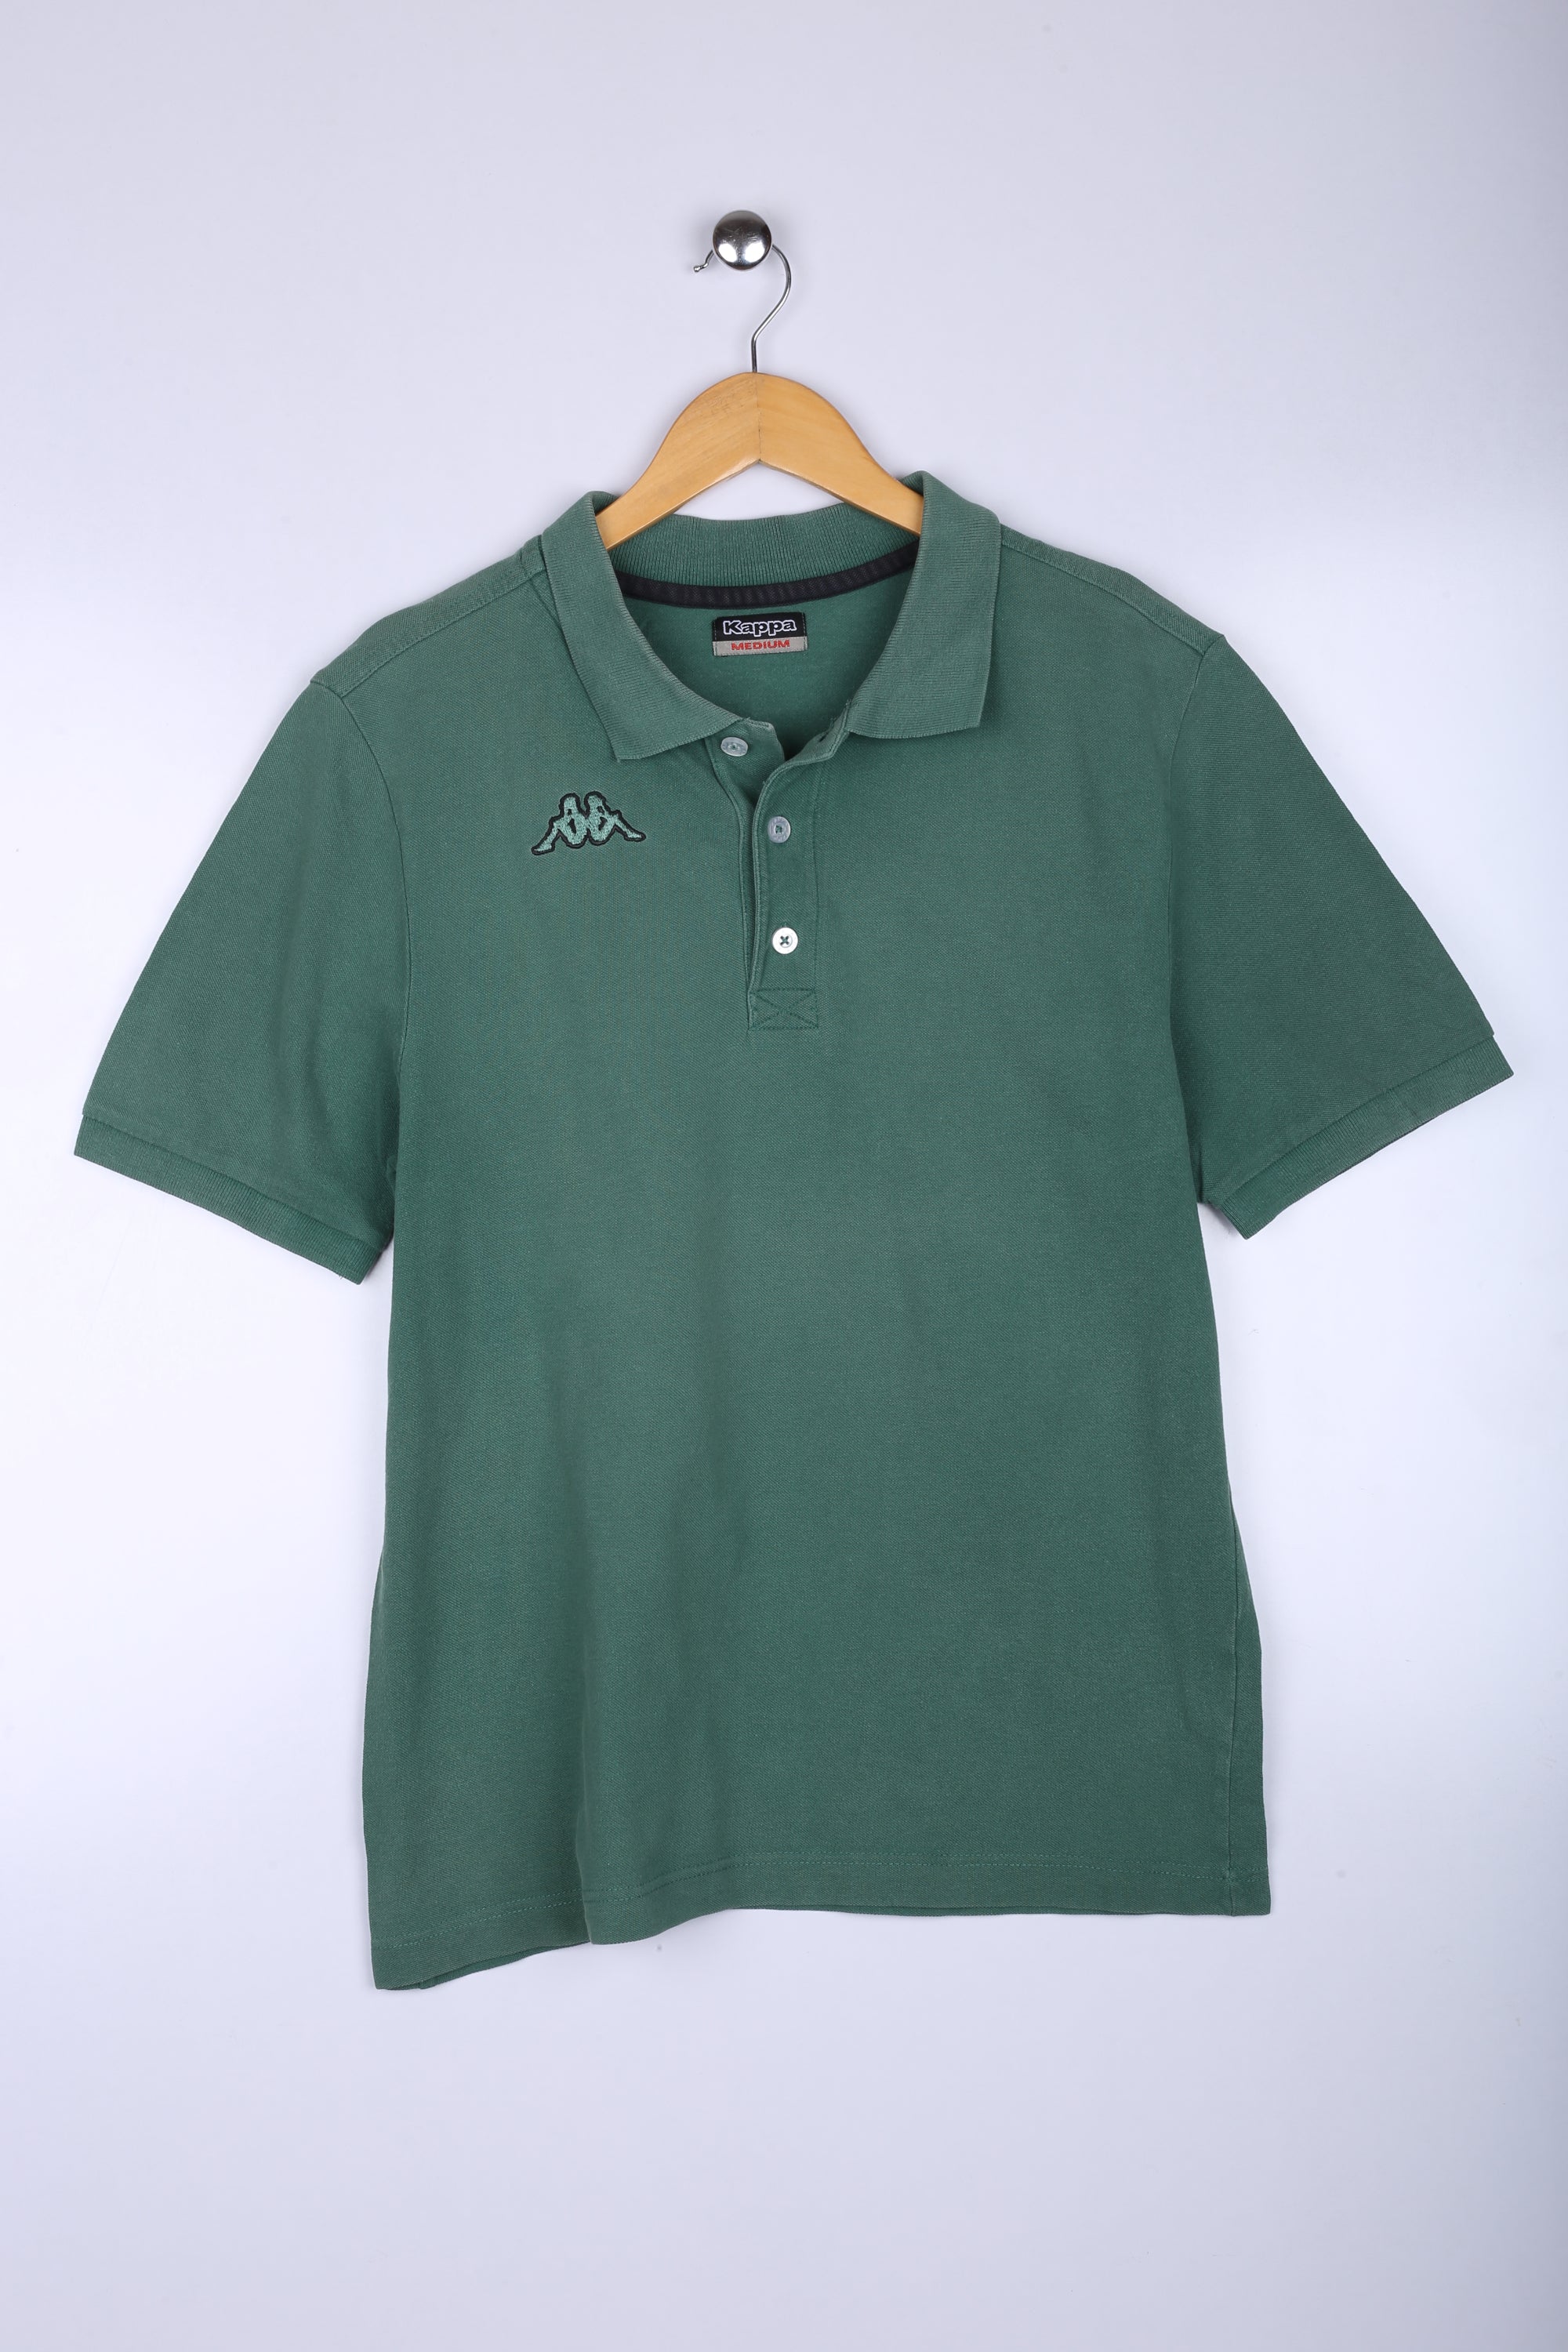 Vintage 90's Kappa Polo Green